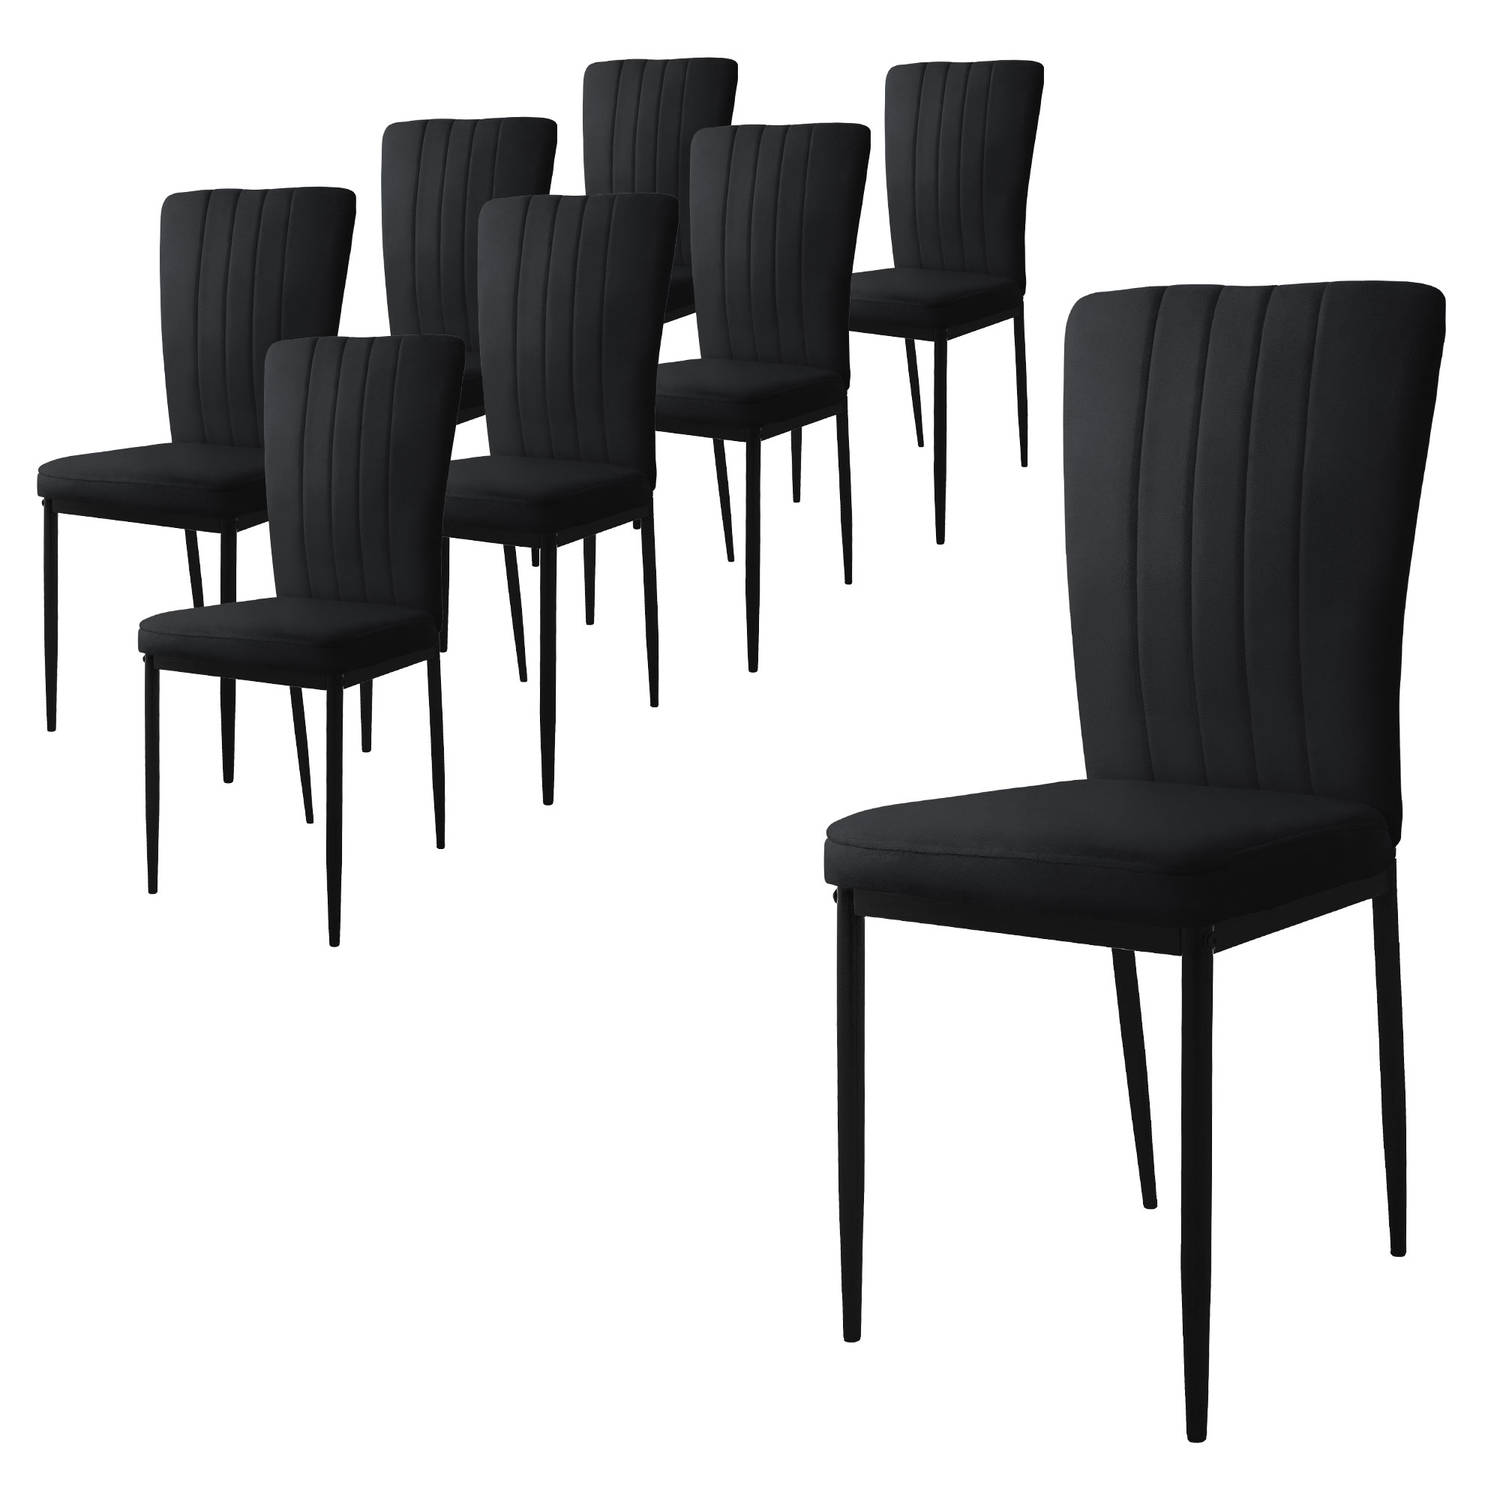 ML-Design eetkamerstoelen set van 8 met fluwelen bekleding, zwart, keukenstoelen met rugleuning, gestoffeerde stoel met metalen poten, ergonomische eettafelstoel, moderne eetkamers